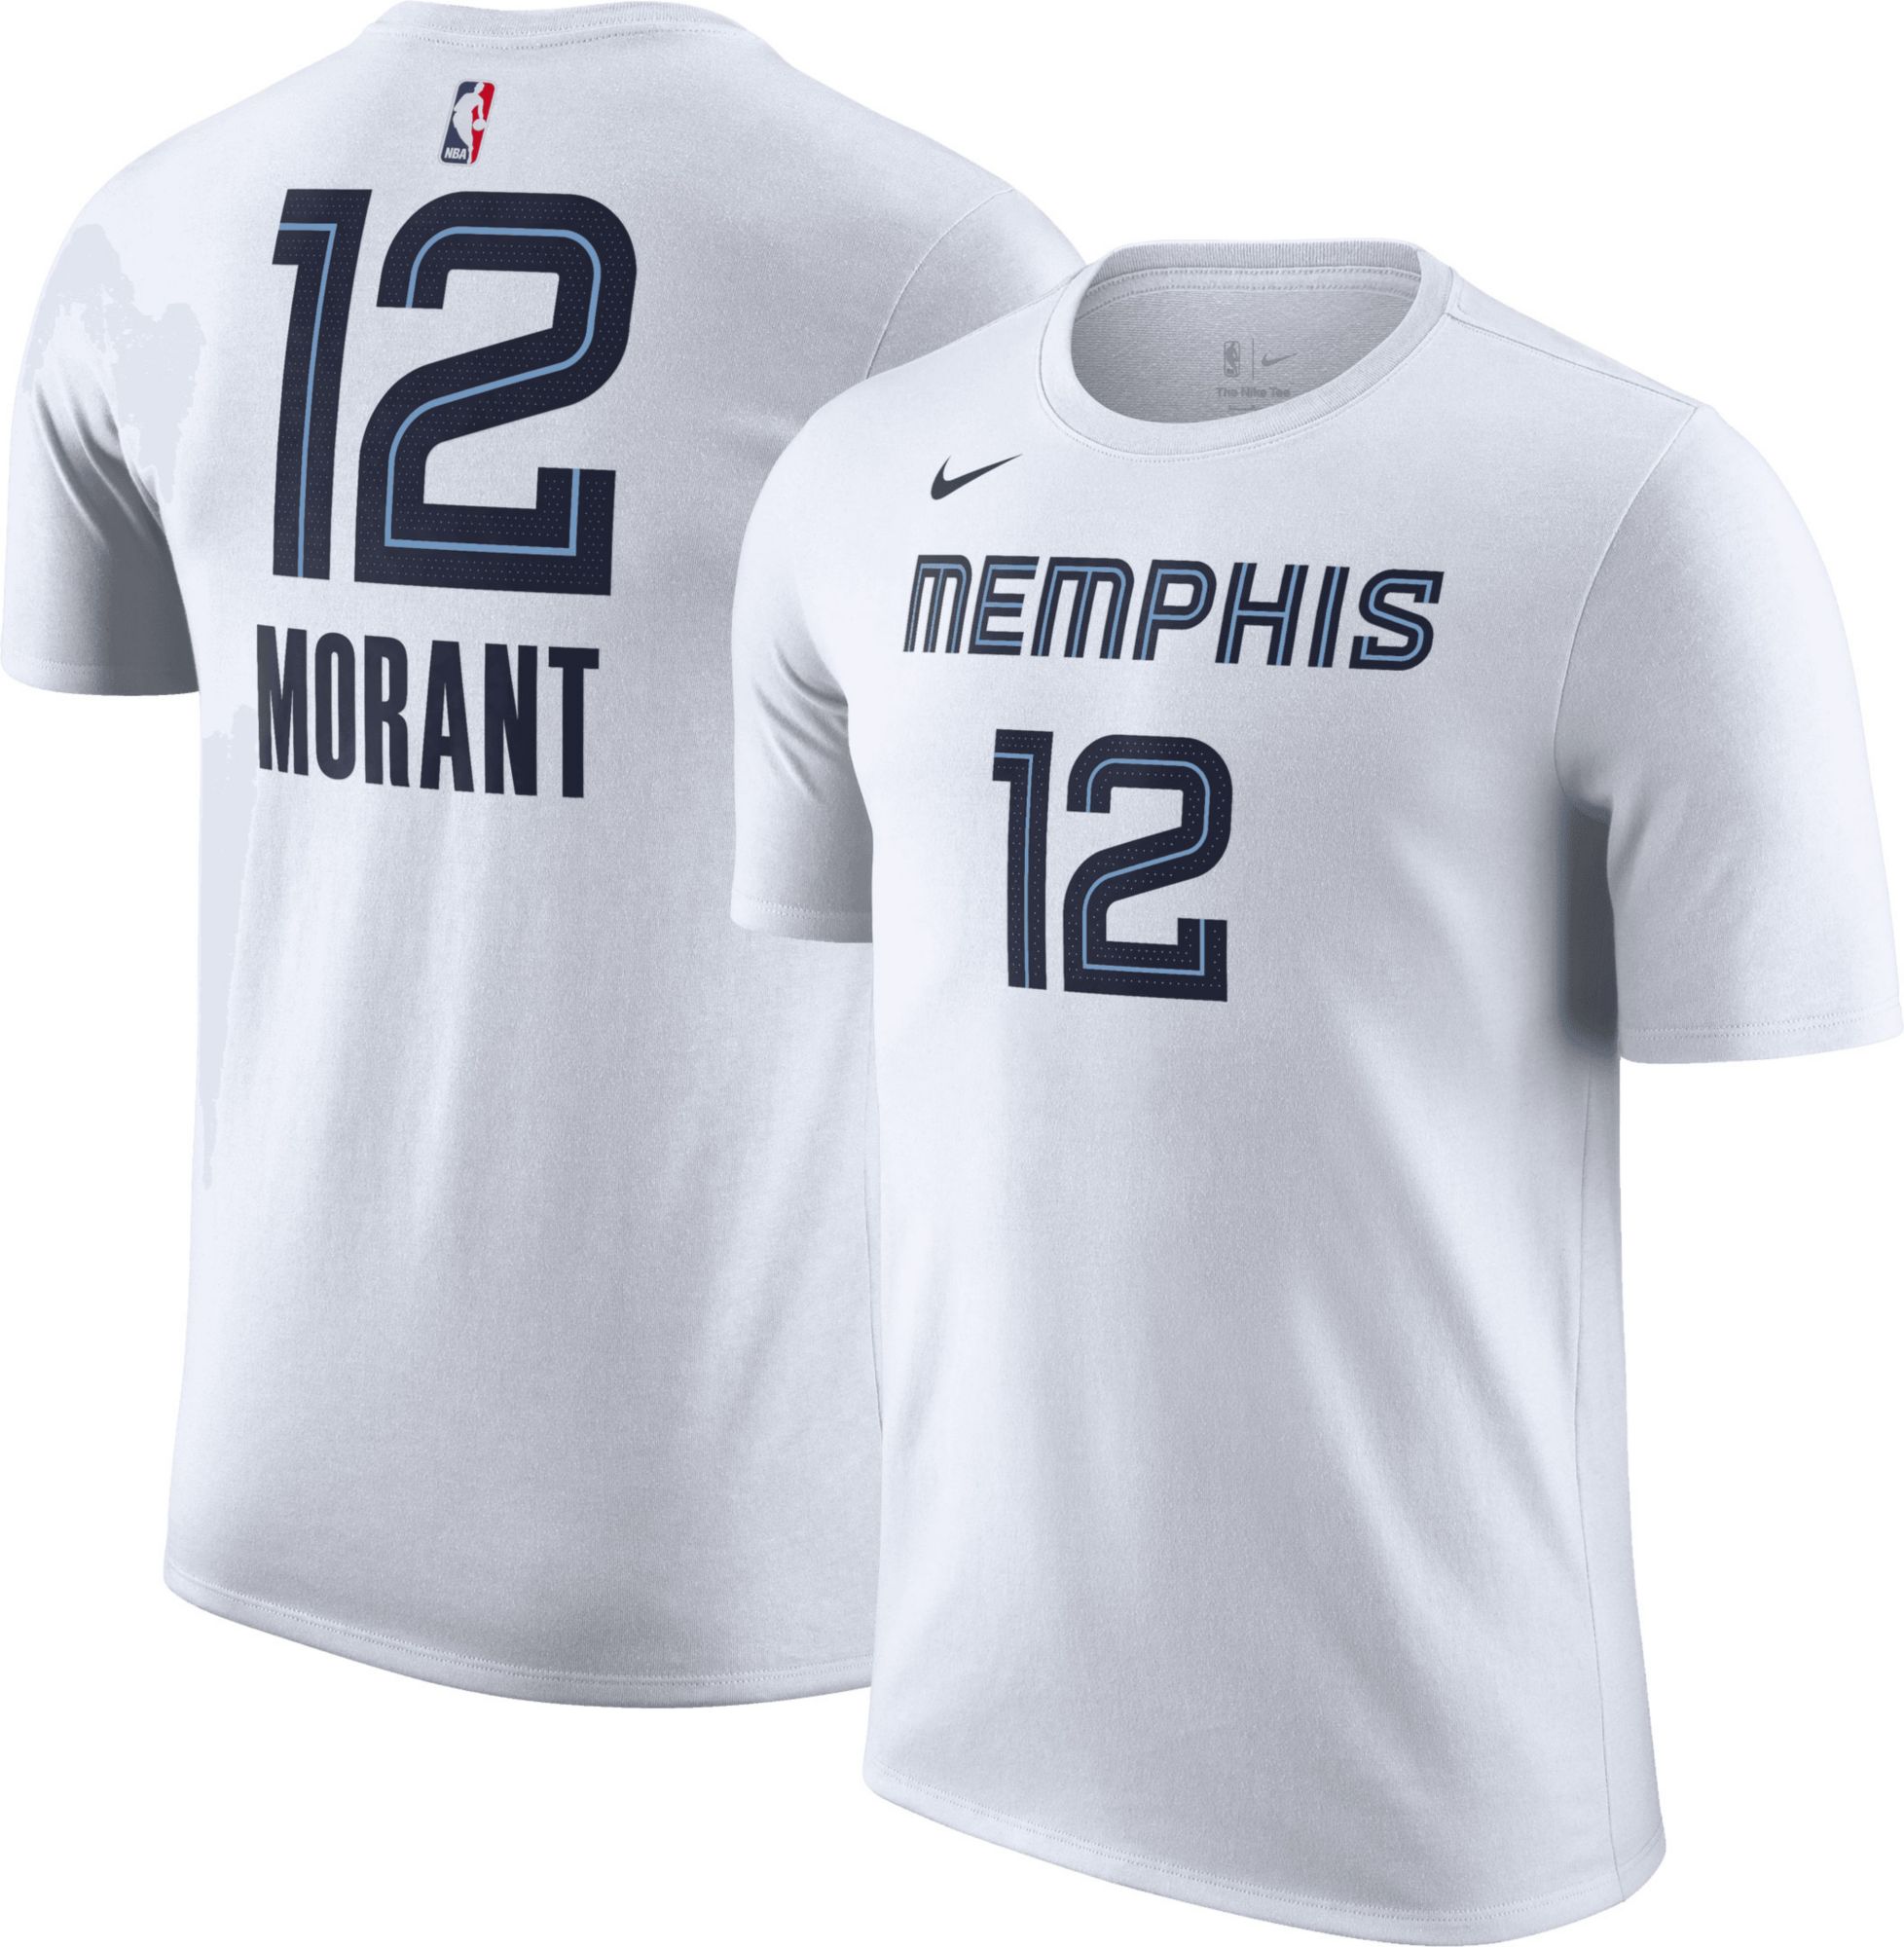 Memphis Grizzlies Men's Nike Statement Jersey #12 Morant – Official Mobile  Shop of the Grizzlies Den